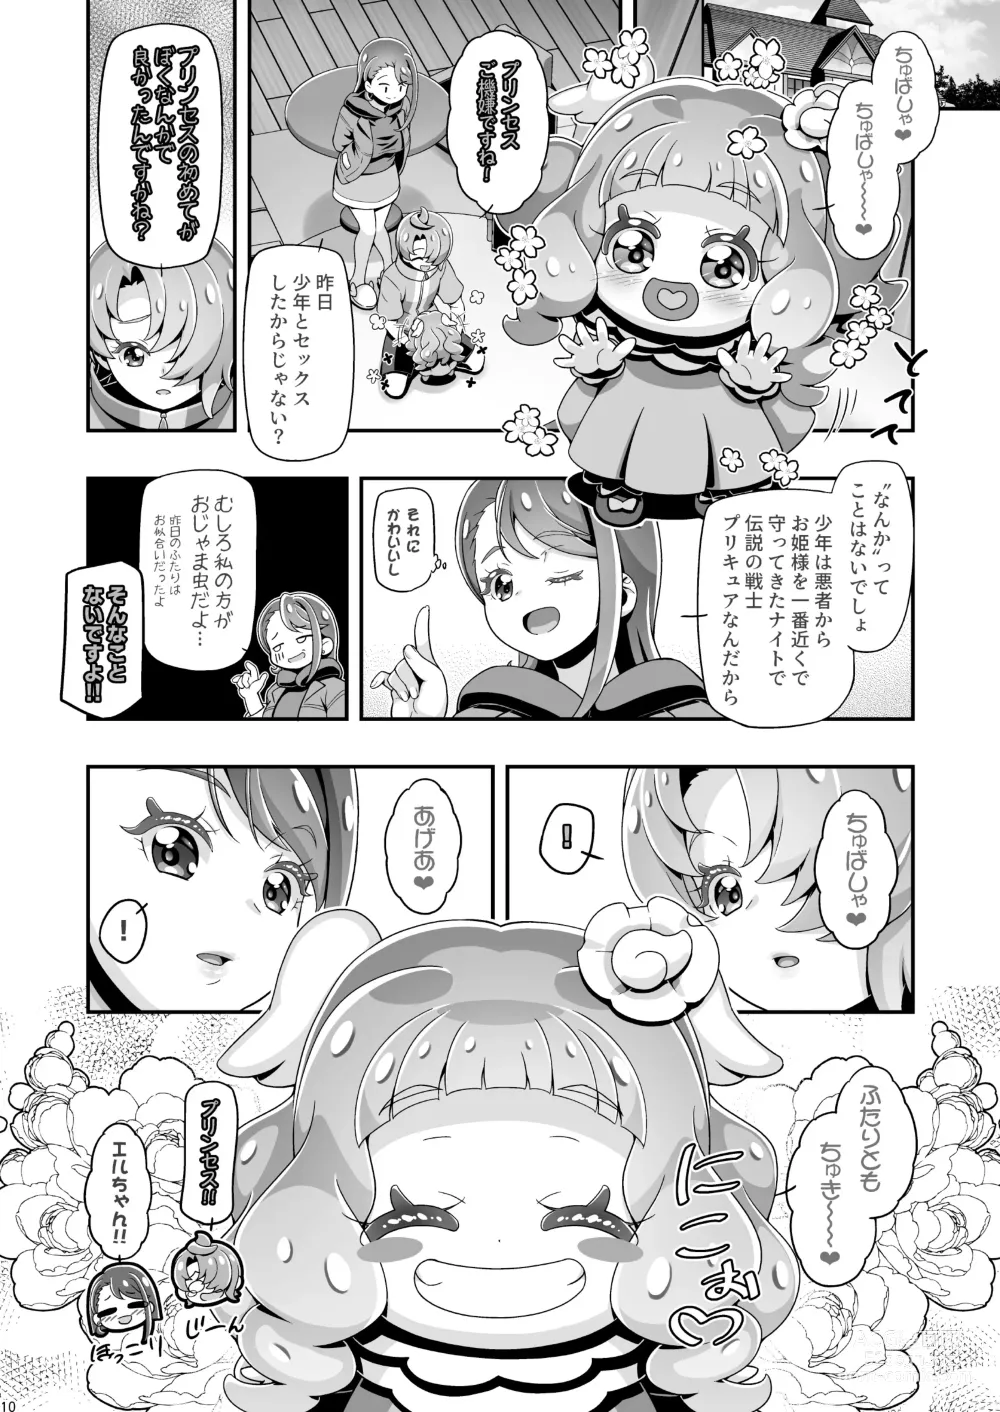 Page 9 of doujinshi ] Hiropuni 2